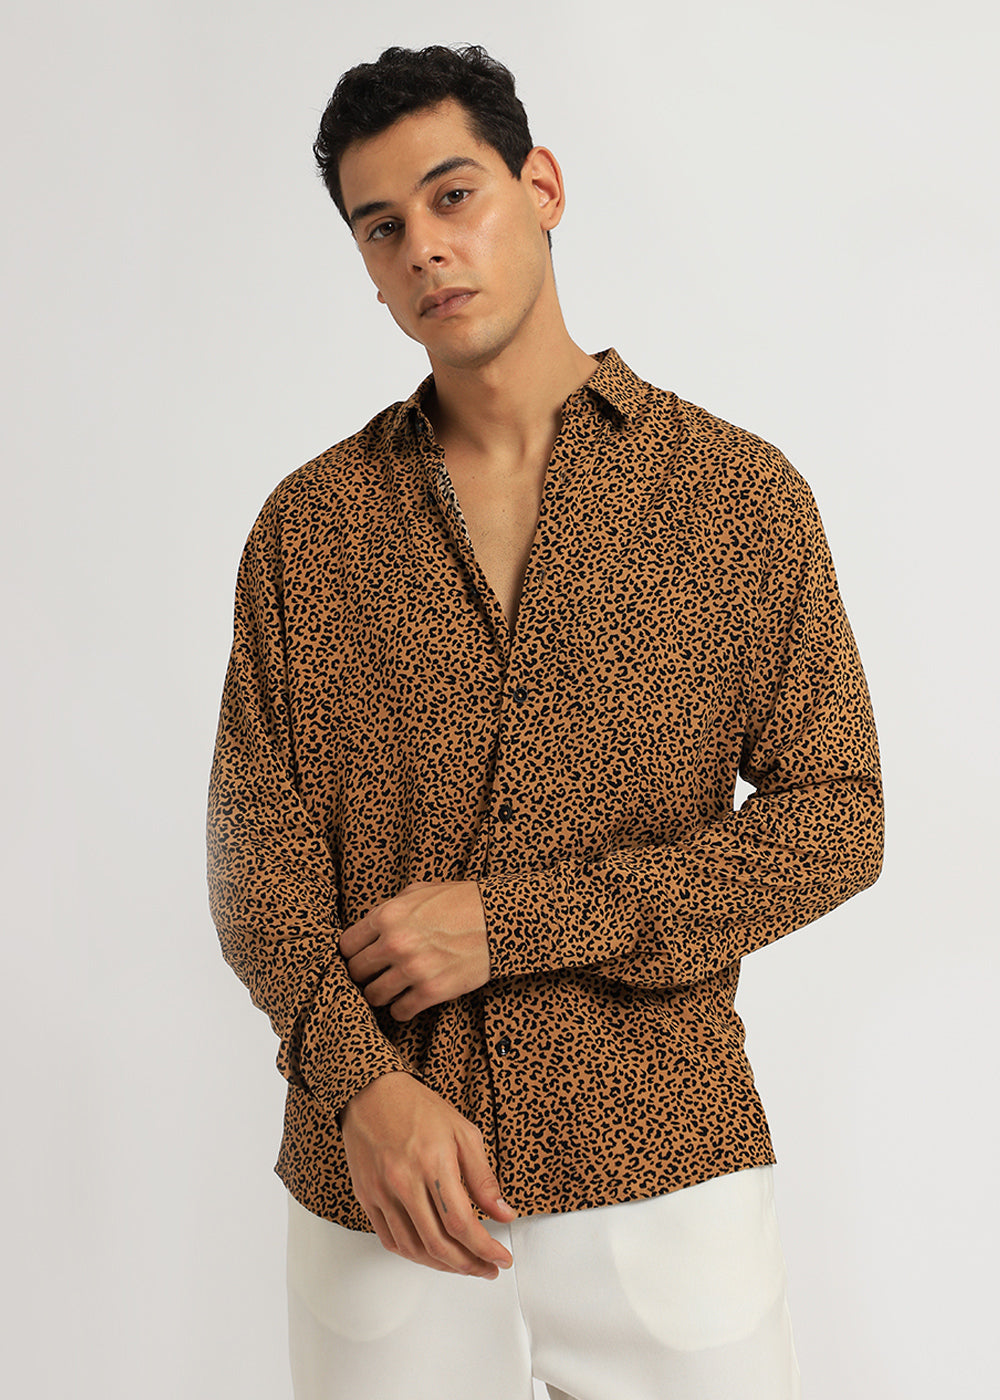 Black Panthera Print Full sleeve shirt